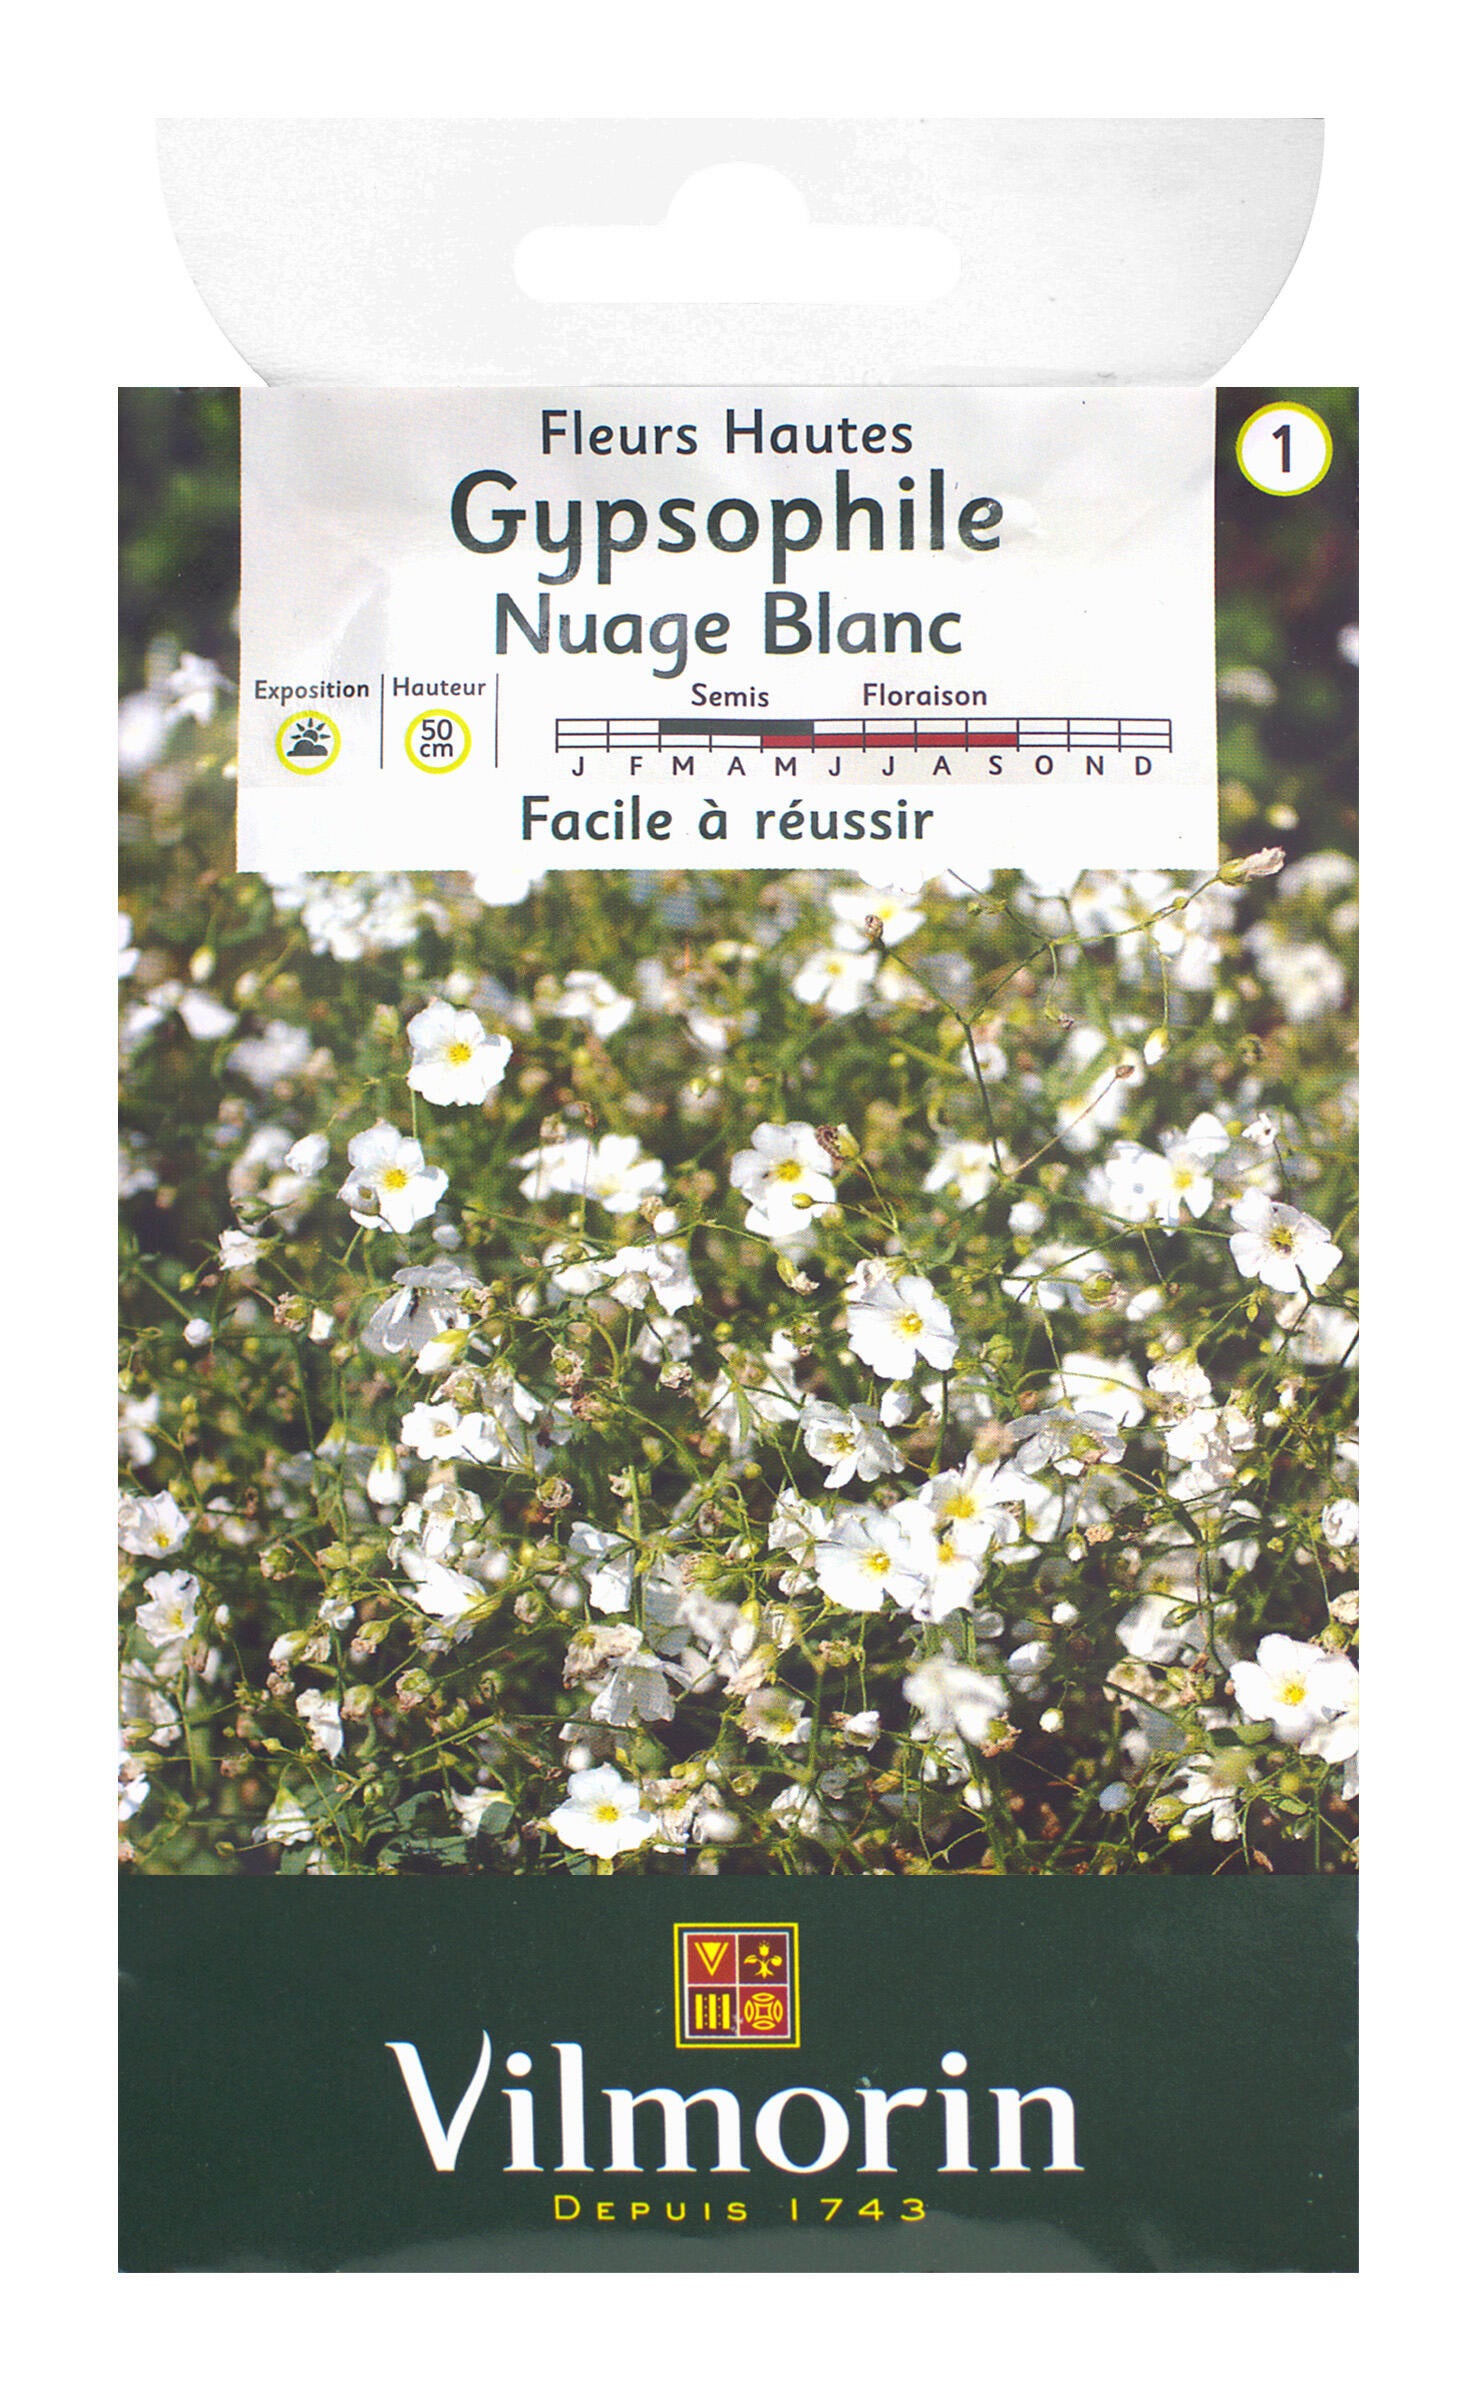 Le Gypsophile à très petites fleurs blanches. Le Gypsophile